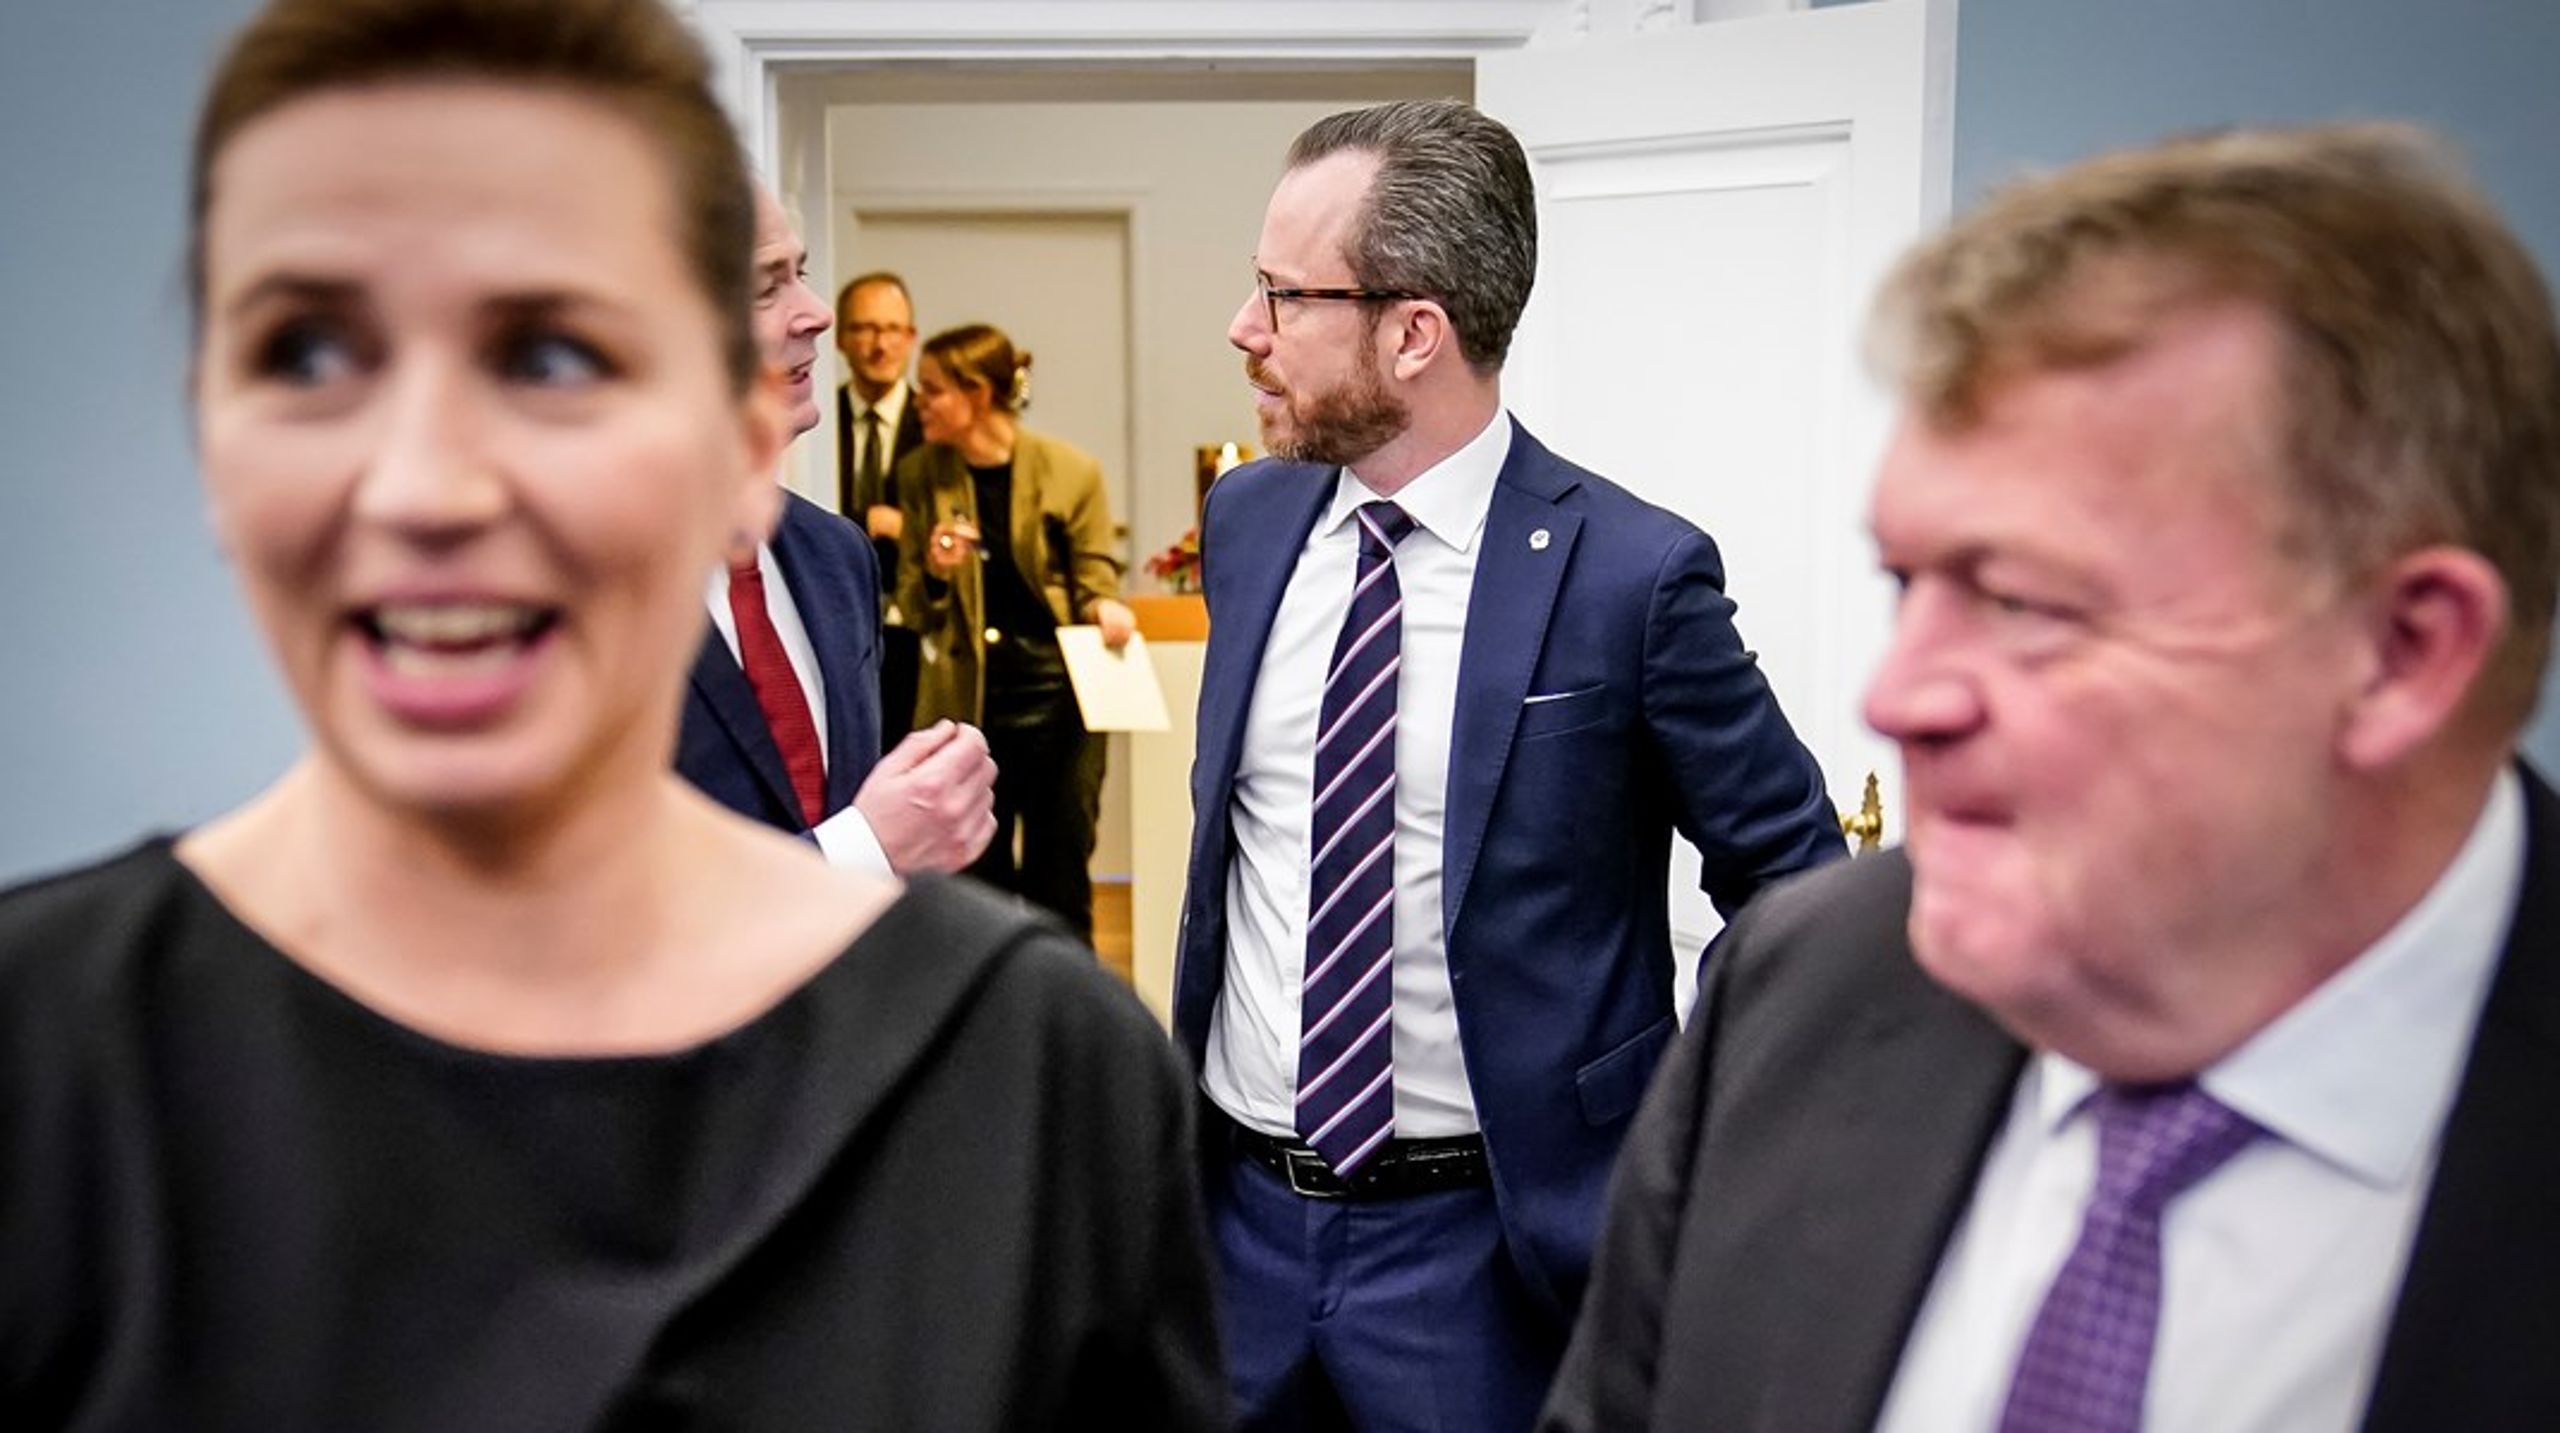 "Jeg skal ikke stå og føre mig selv frem, men jeg er en relativt erfaren politiker," siger Lars Løkke Rasmussen. Han frygter ikke, at posten som udenrigsminister vil kompromittere hans magt i regeringens indre liv.